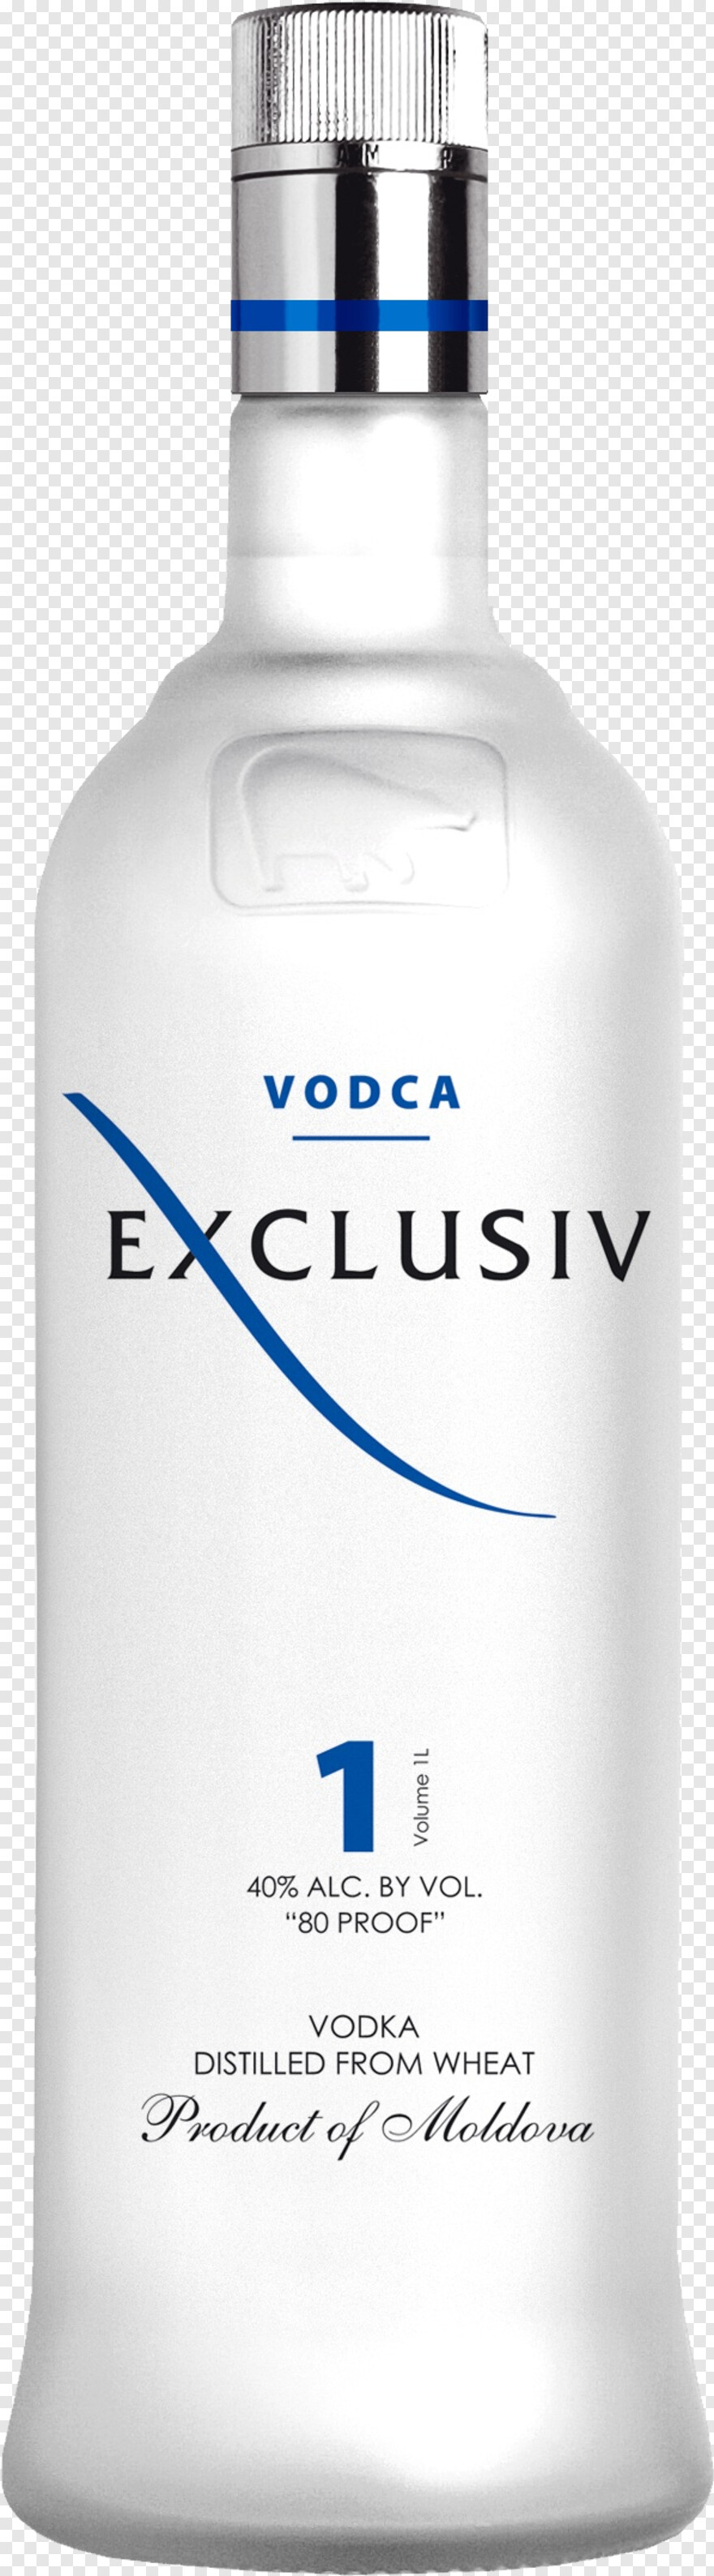 vodka # 593561